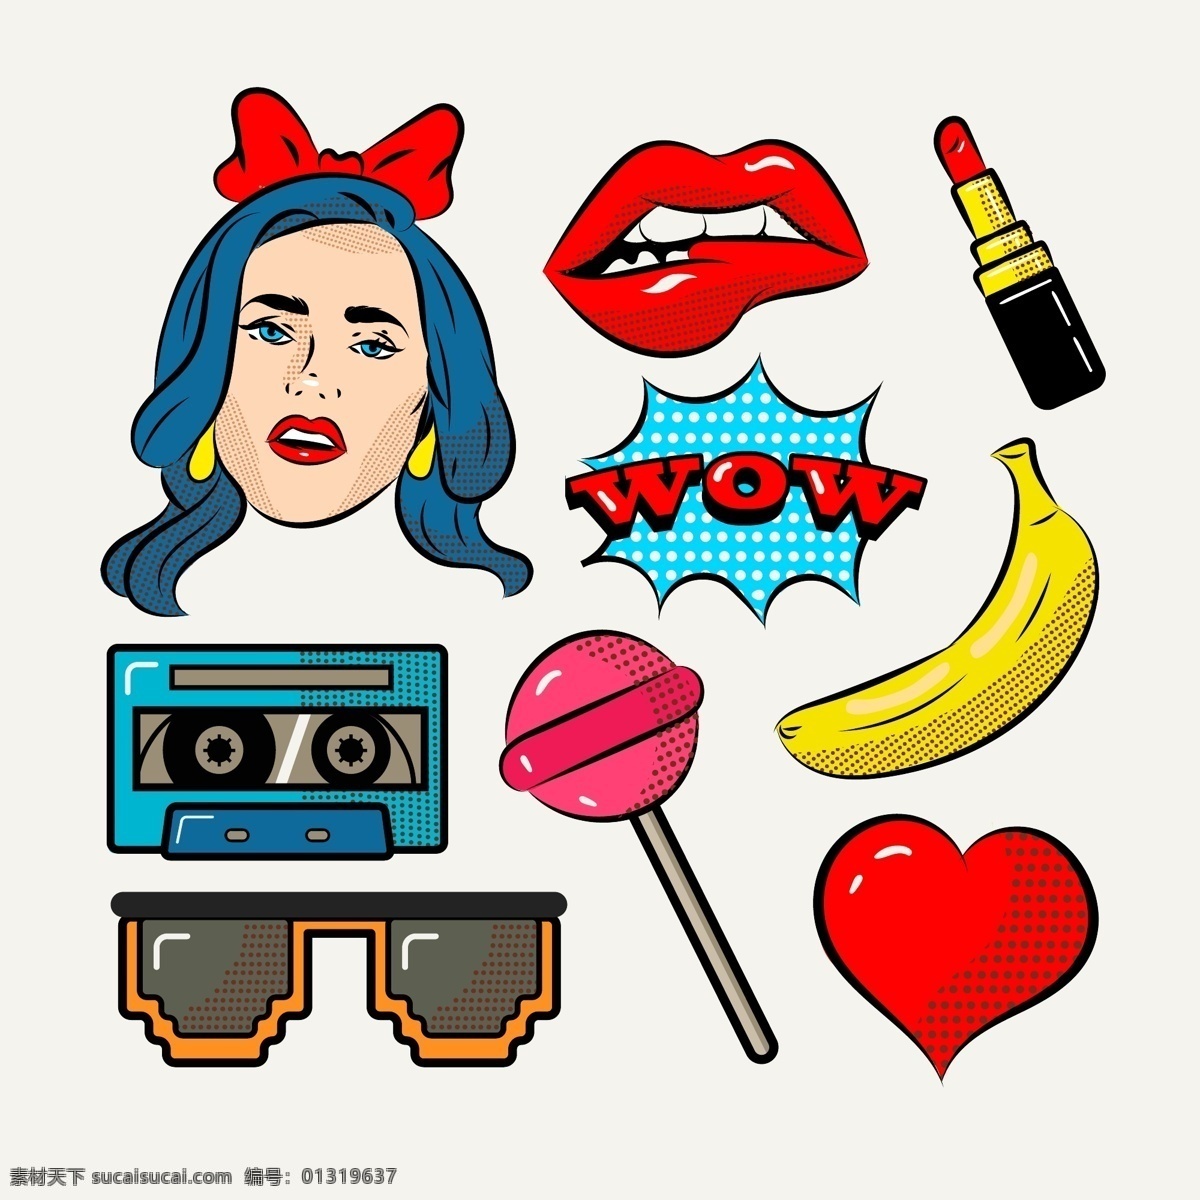 时尚 卡通 波普 风格 装饰 图案 摩登 摩登女郎 红唇 唇膏 口红 磁带 卡带 墨镜 香蕉 棒棒糖 红心 波普风格 波普元素 波普文化